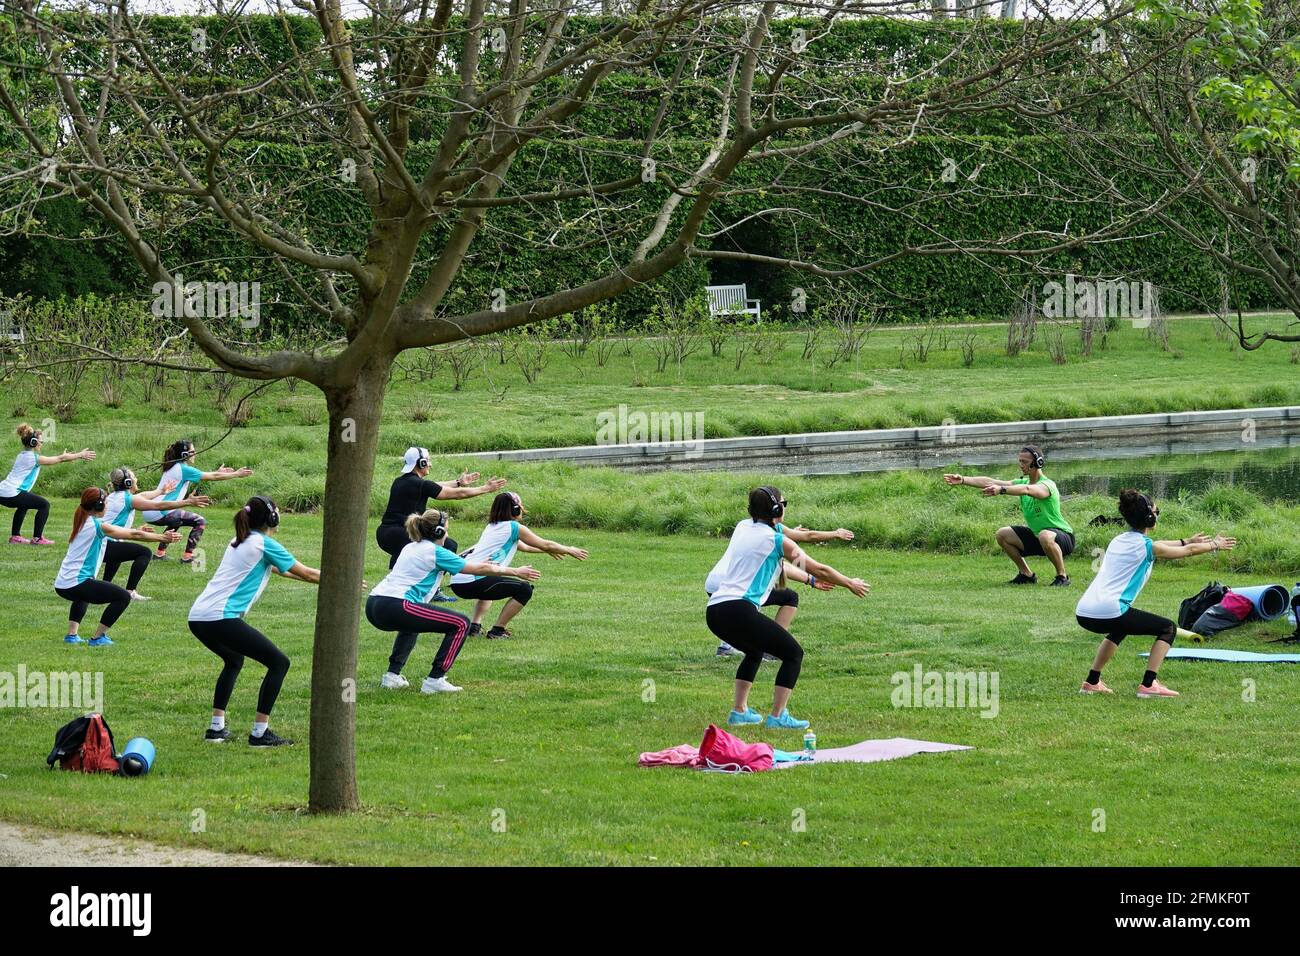 Entrenamiento al aire libre. Al aire libre. Las personas que hacen ejercicio en grupo en el parque manteniendo la distancia entre sí. Distanciamiento social después del coronavirus covid-19 qu Foto de stock